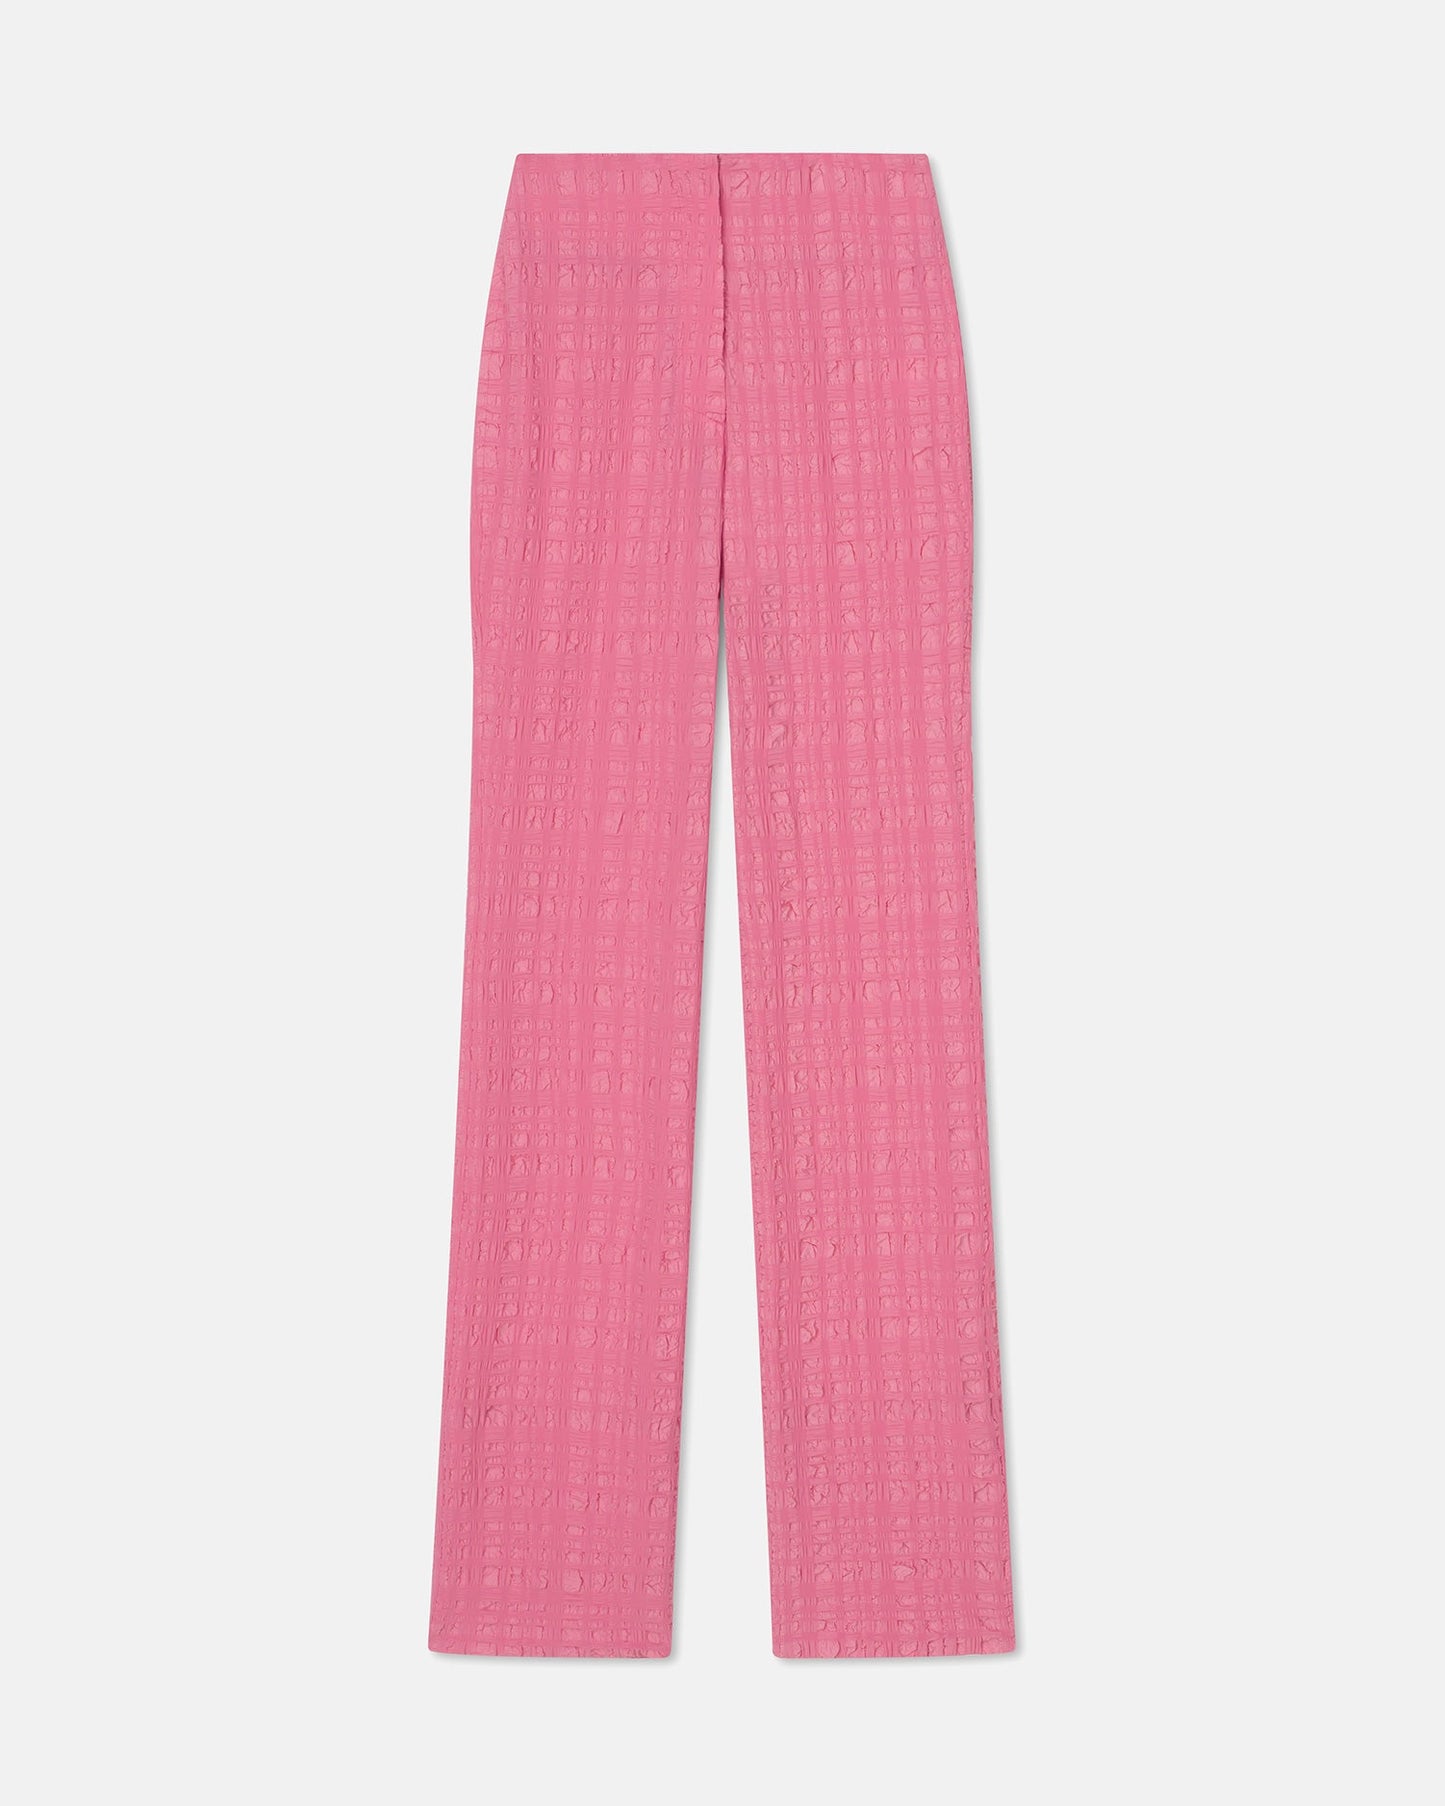 Juna - Seersucker Pants - Pink Seersucker